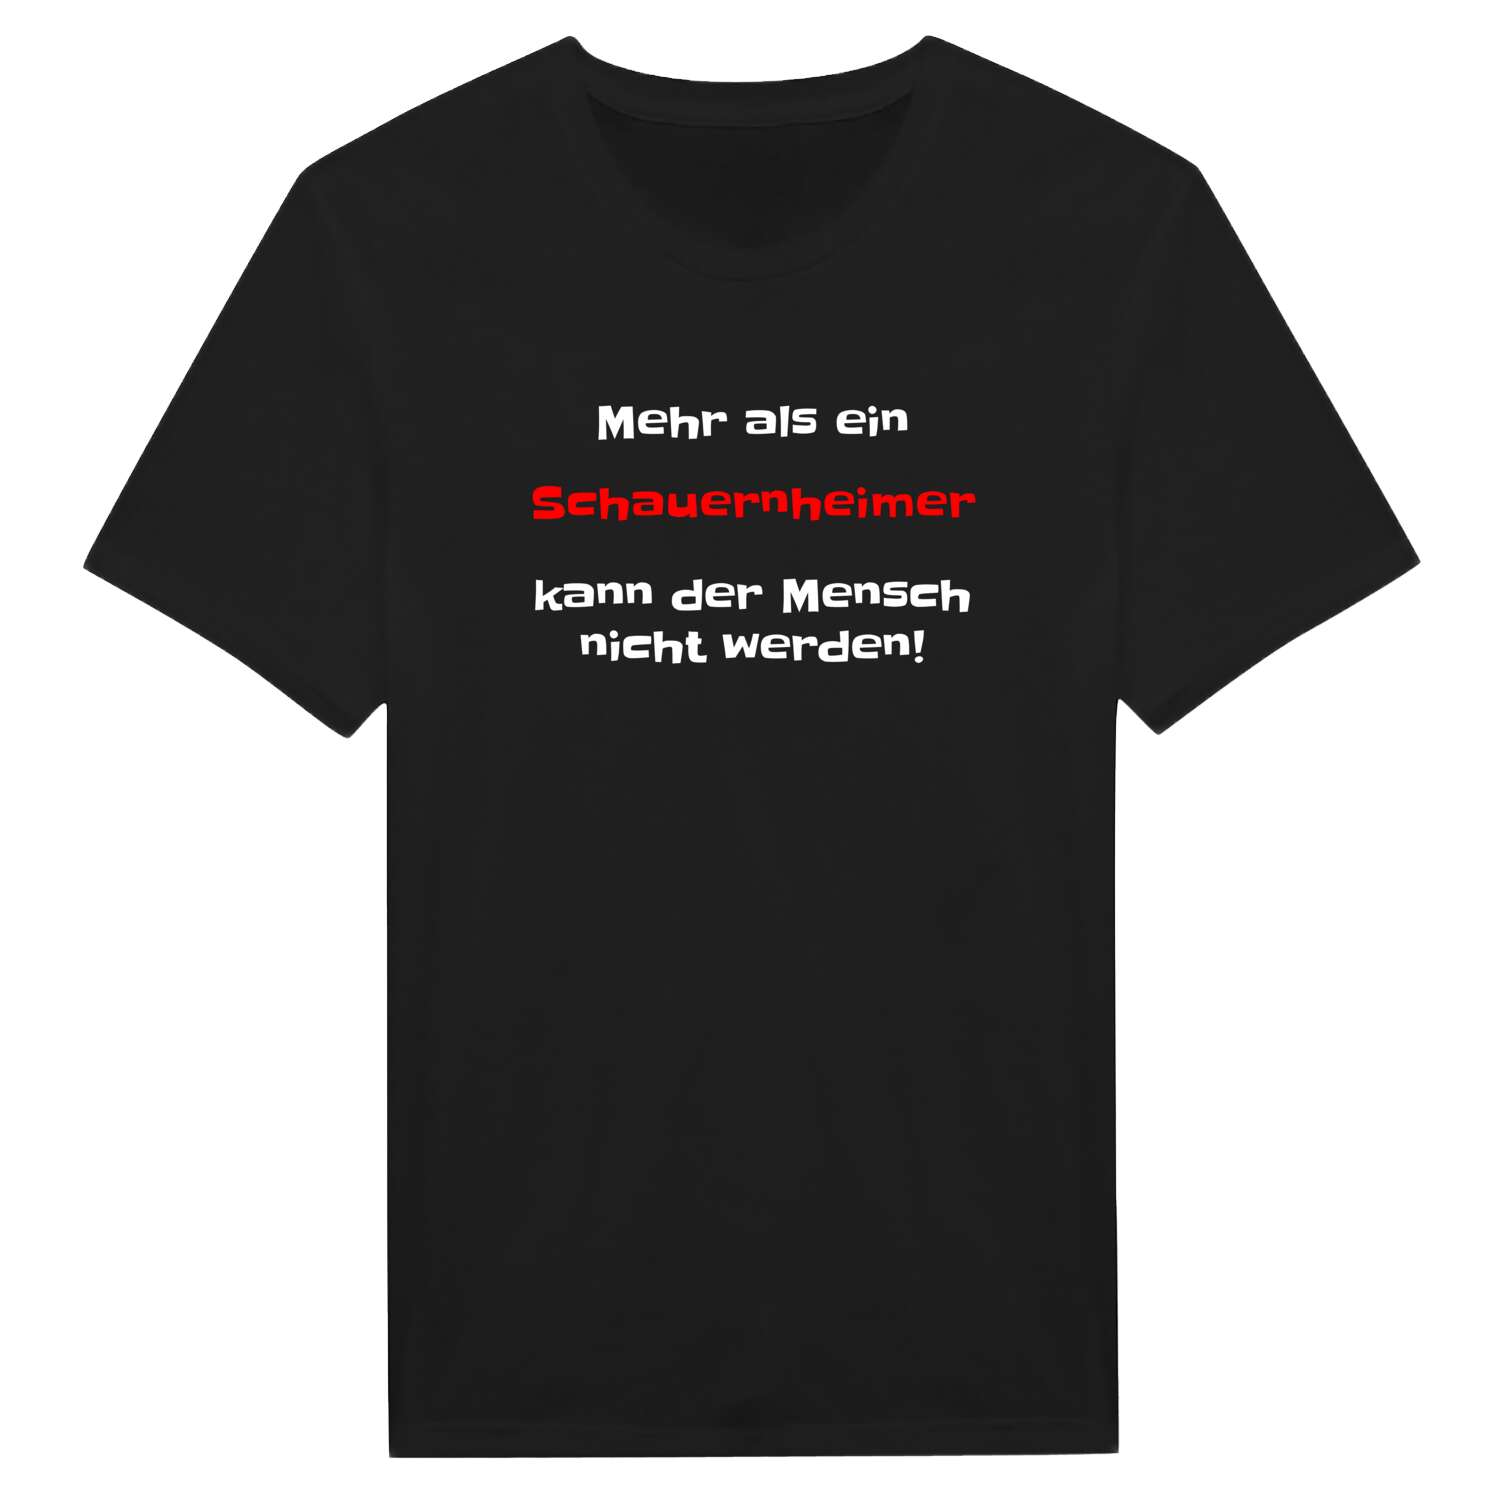 Schauernheim T-Shirt »Mehr als ein«